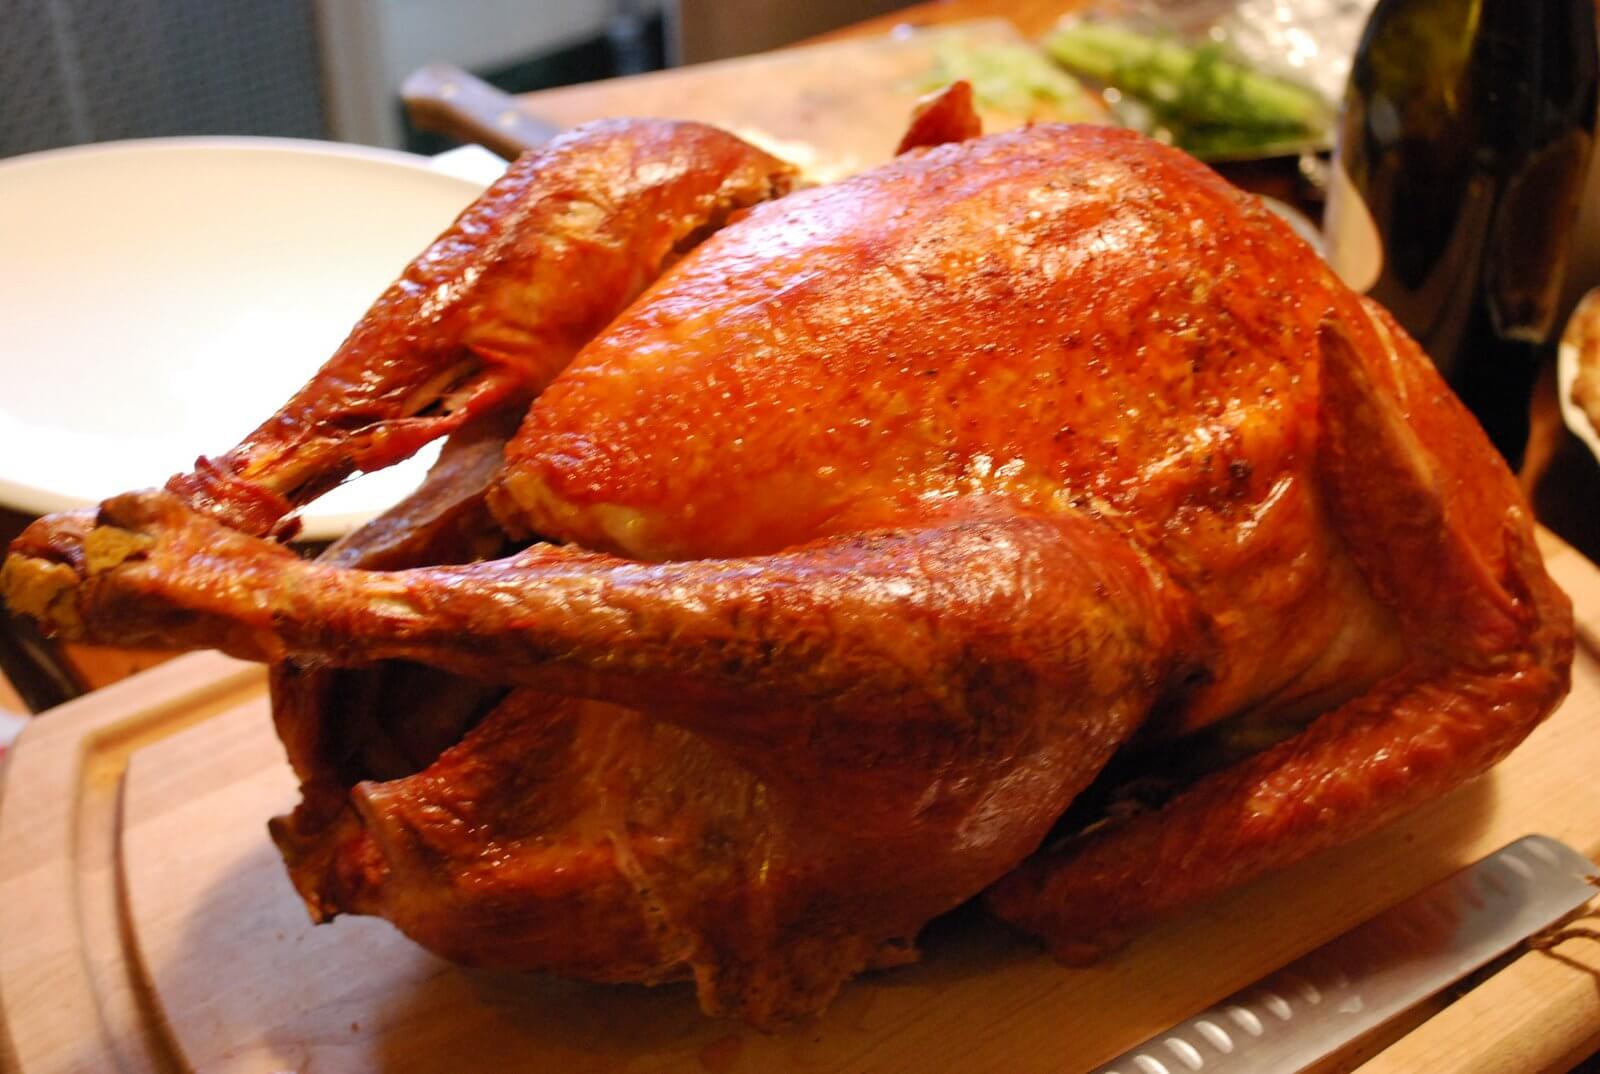 Roasted heritage breed turkey.